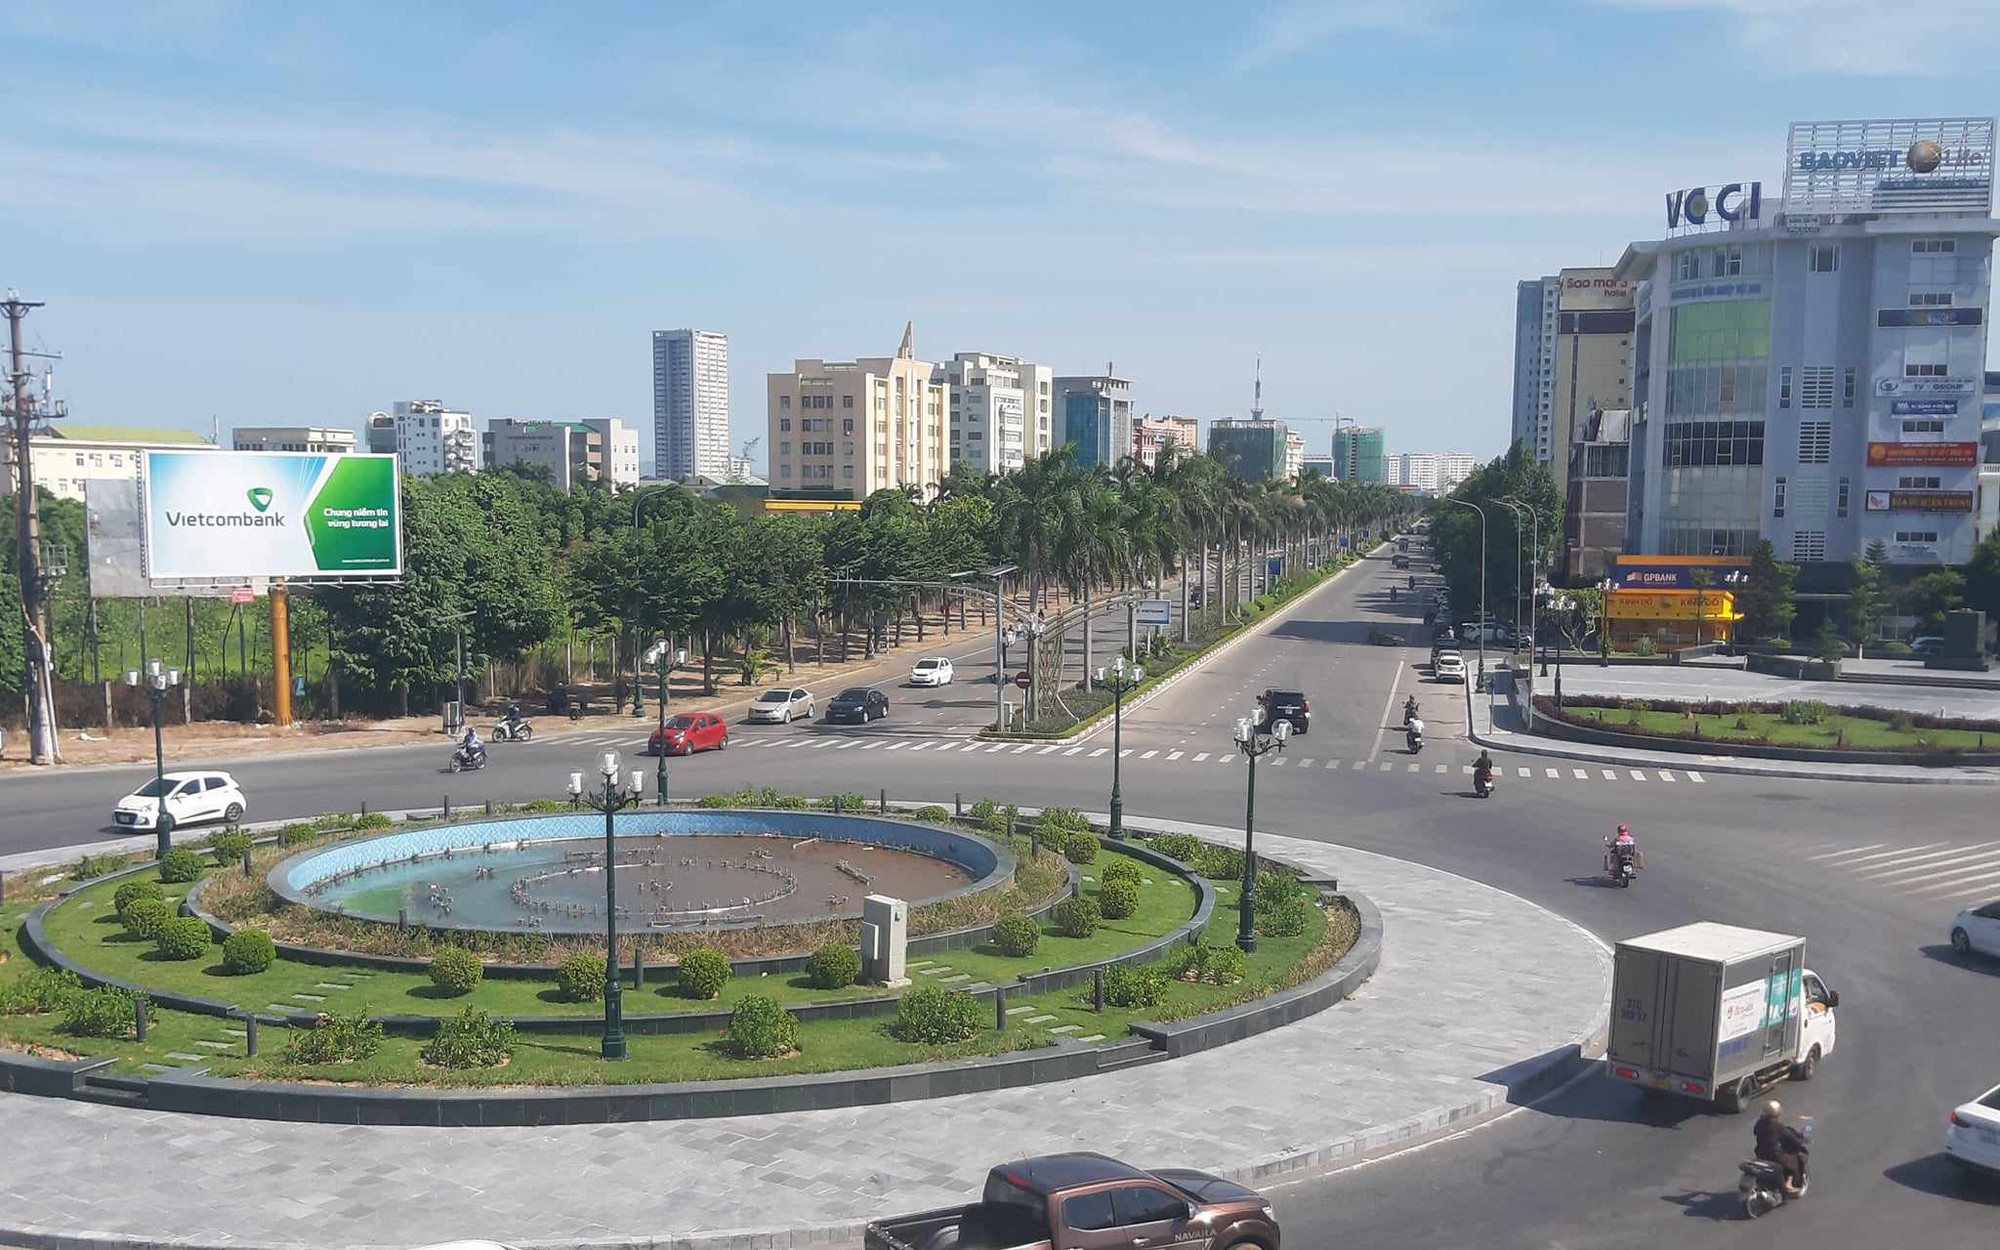 Tiếp nhận và đặt tượng Lê-nin trong khuôn viên 1.000 m2 tại tỉnh Nghệ An